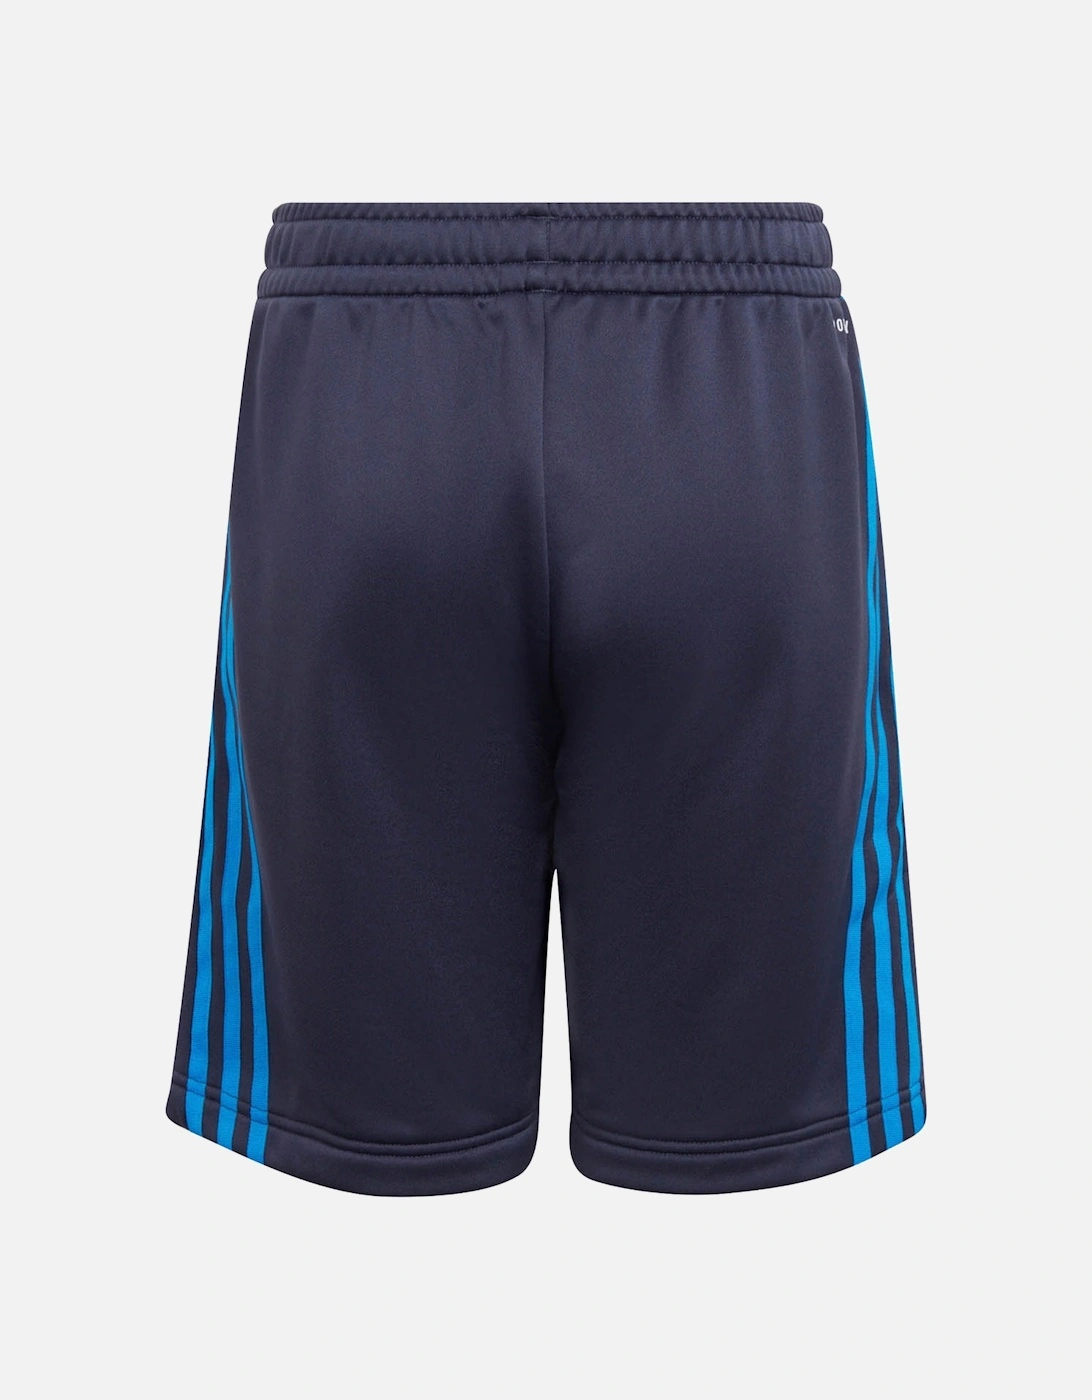 Youths BAR Shorts (Navy)